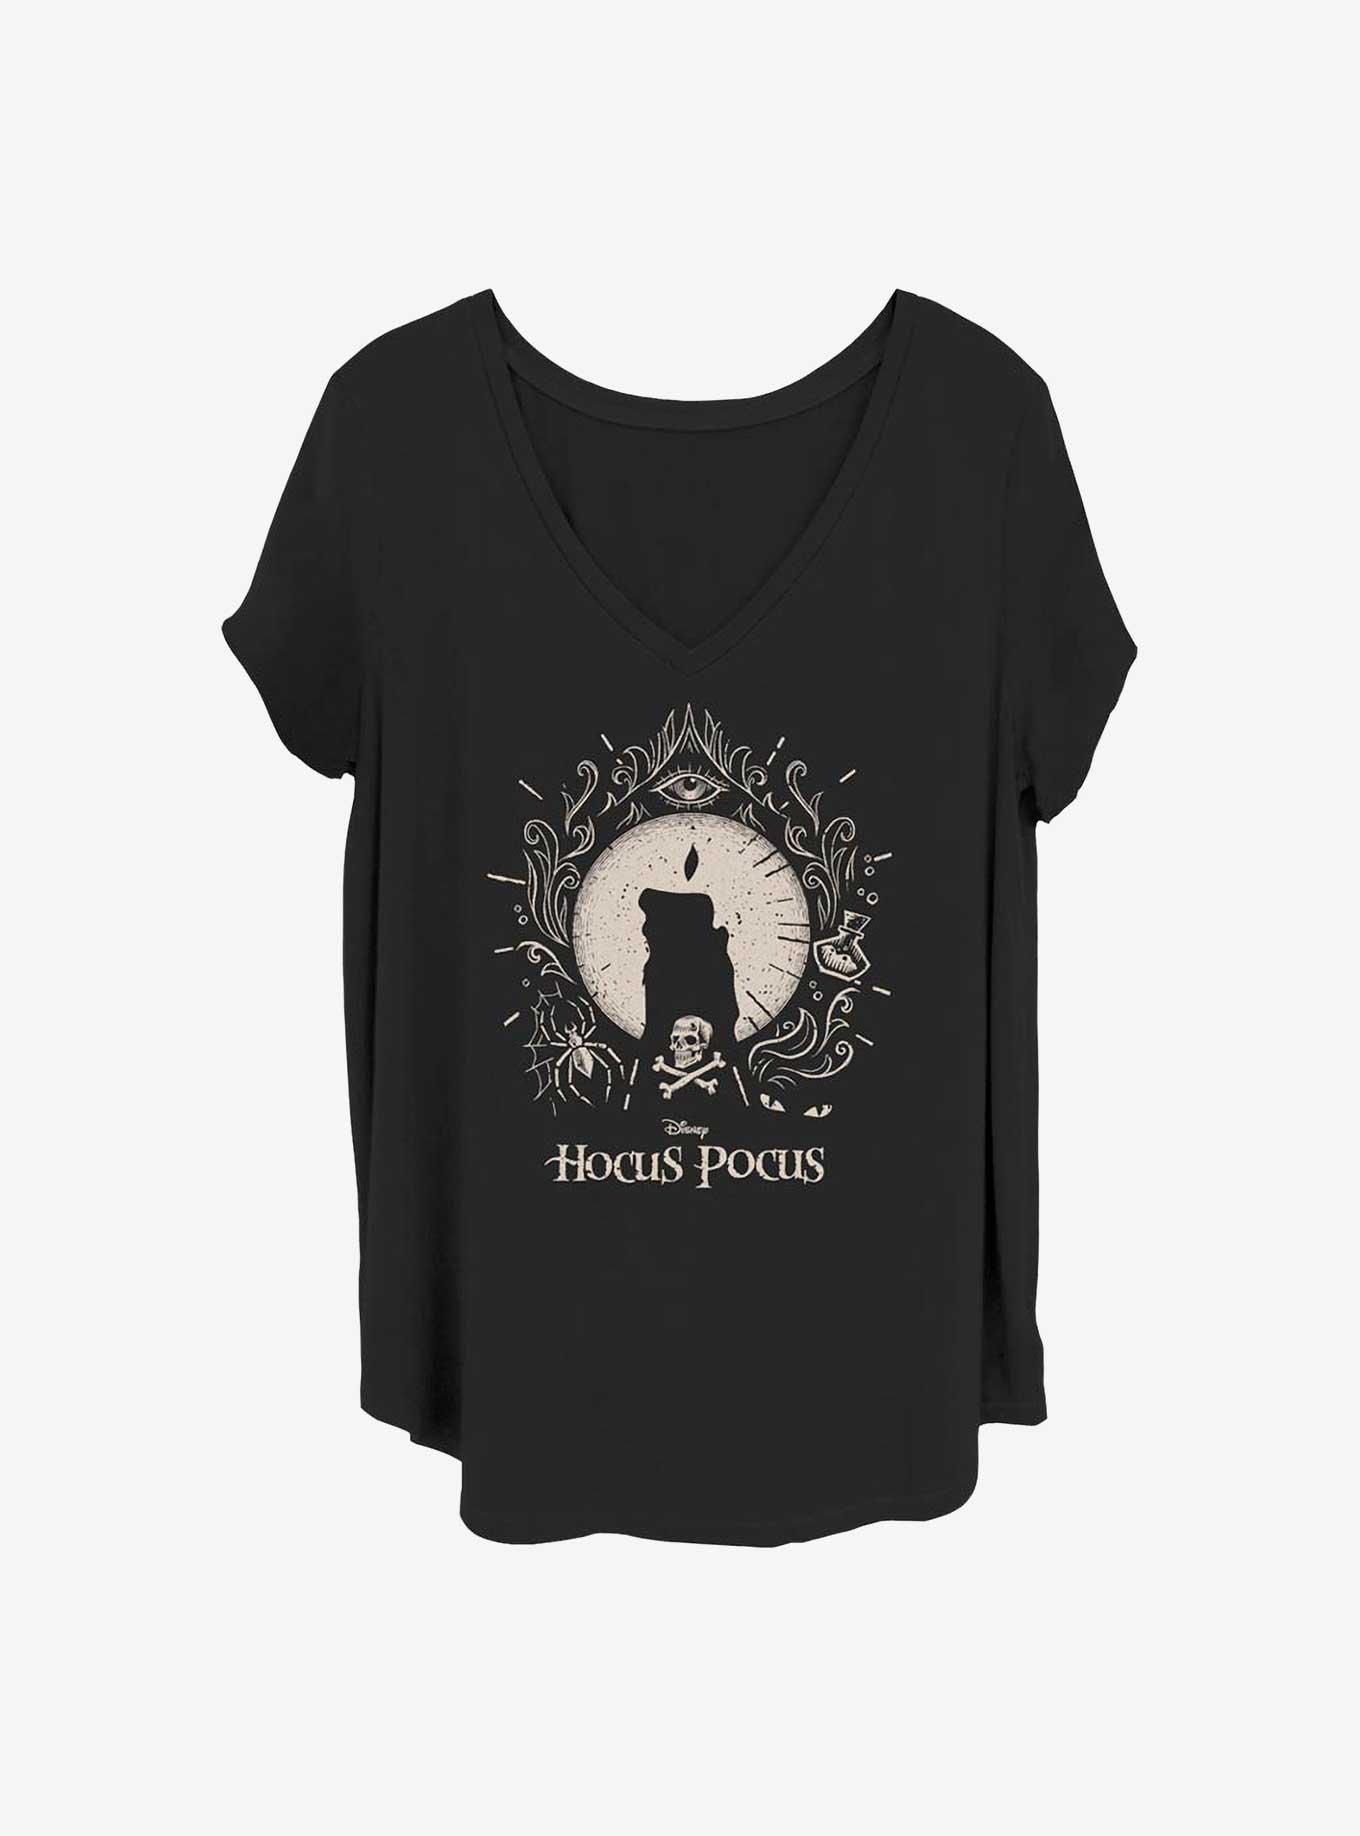 Disney Hocus Pocus Black Flame Girls T-Shirt Plus